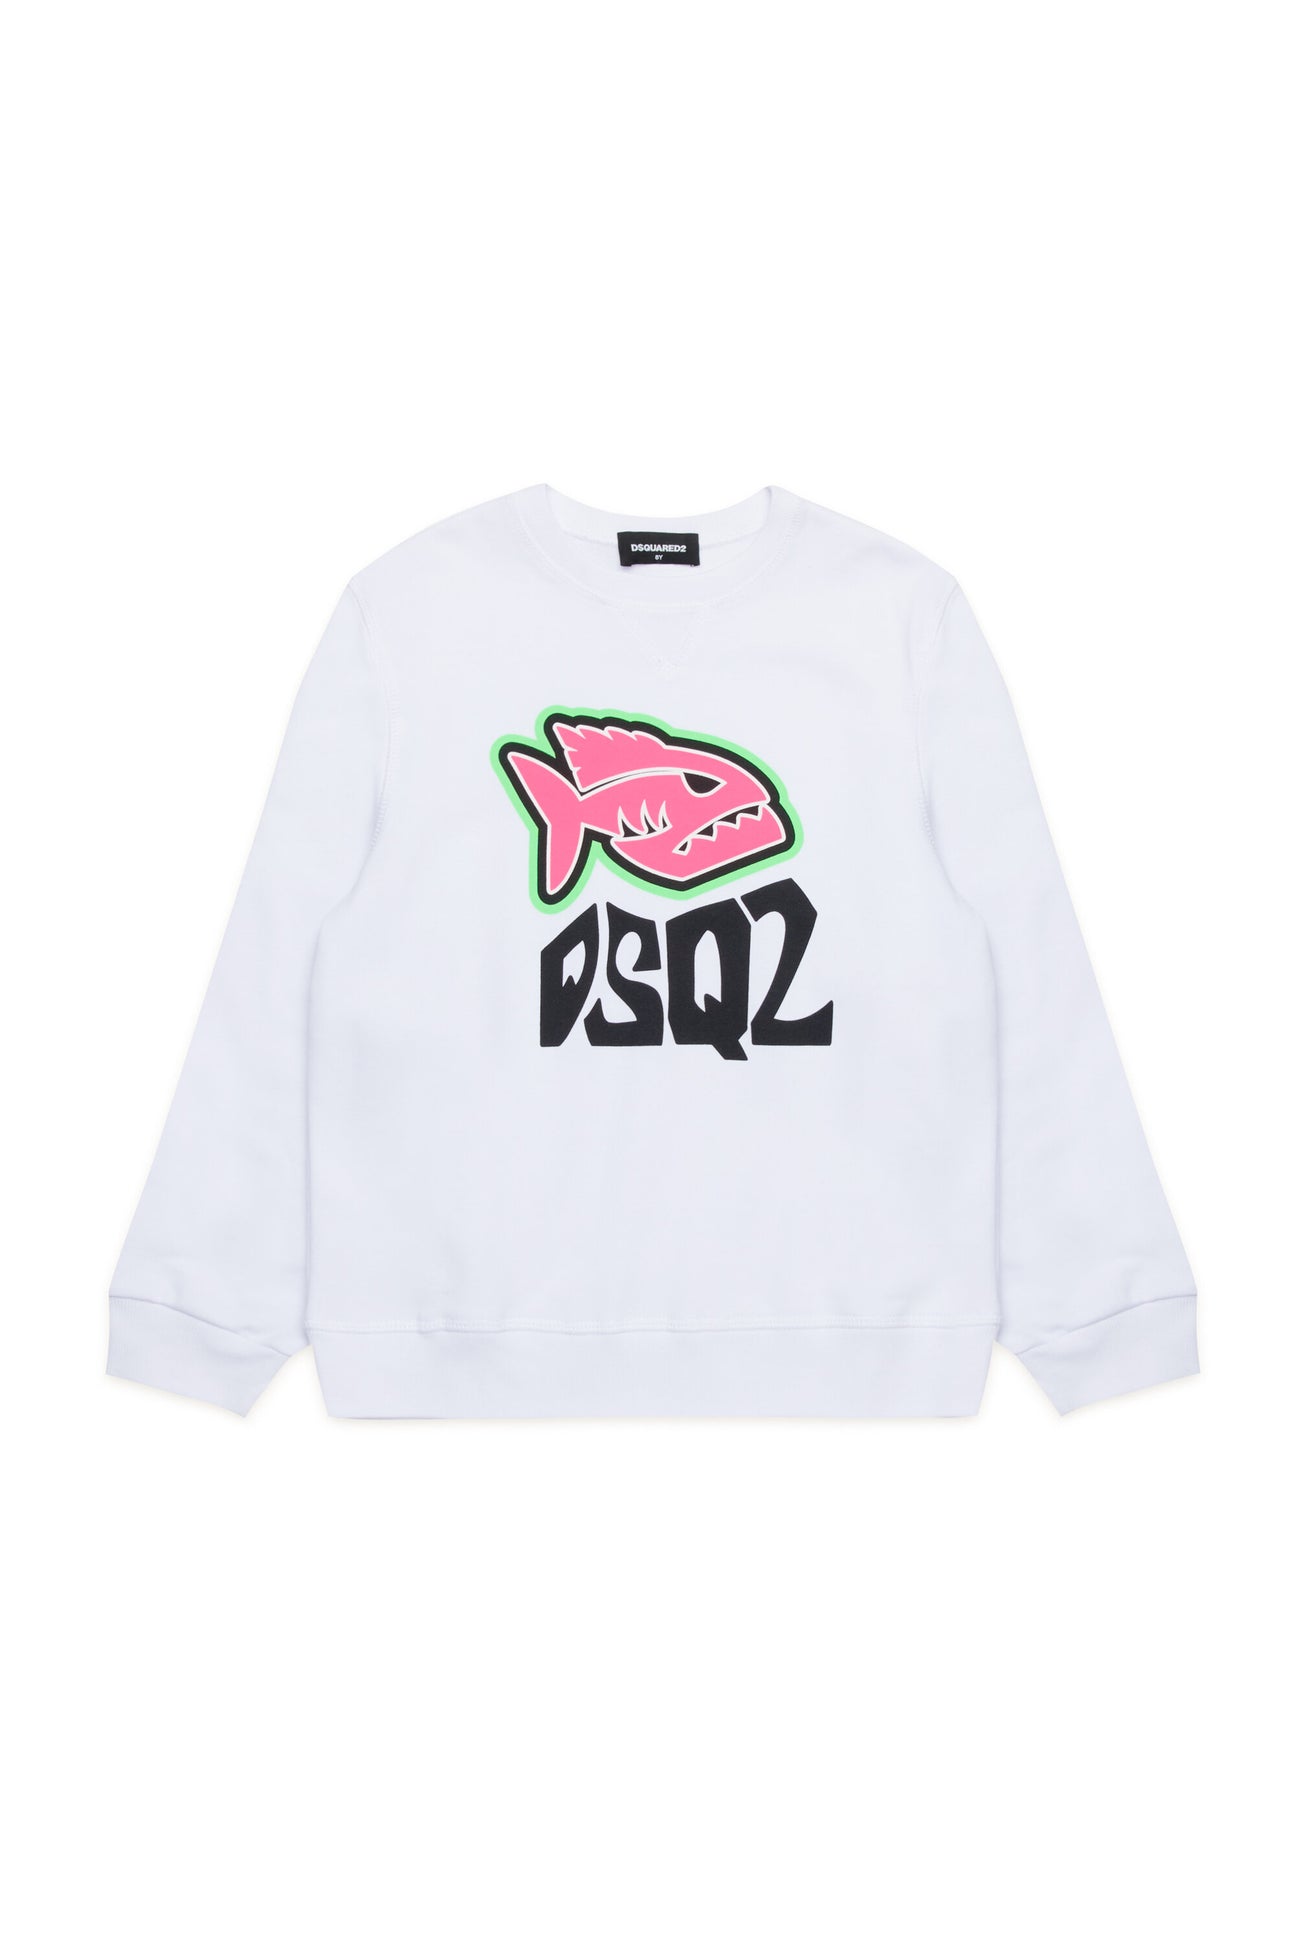 Piranha graphic sweatshirt 